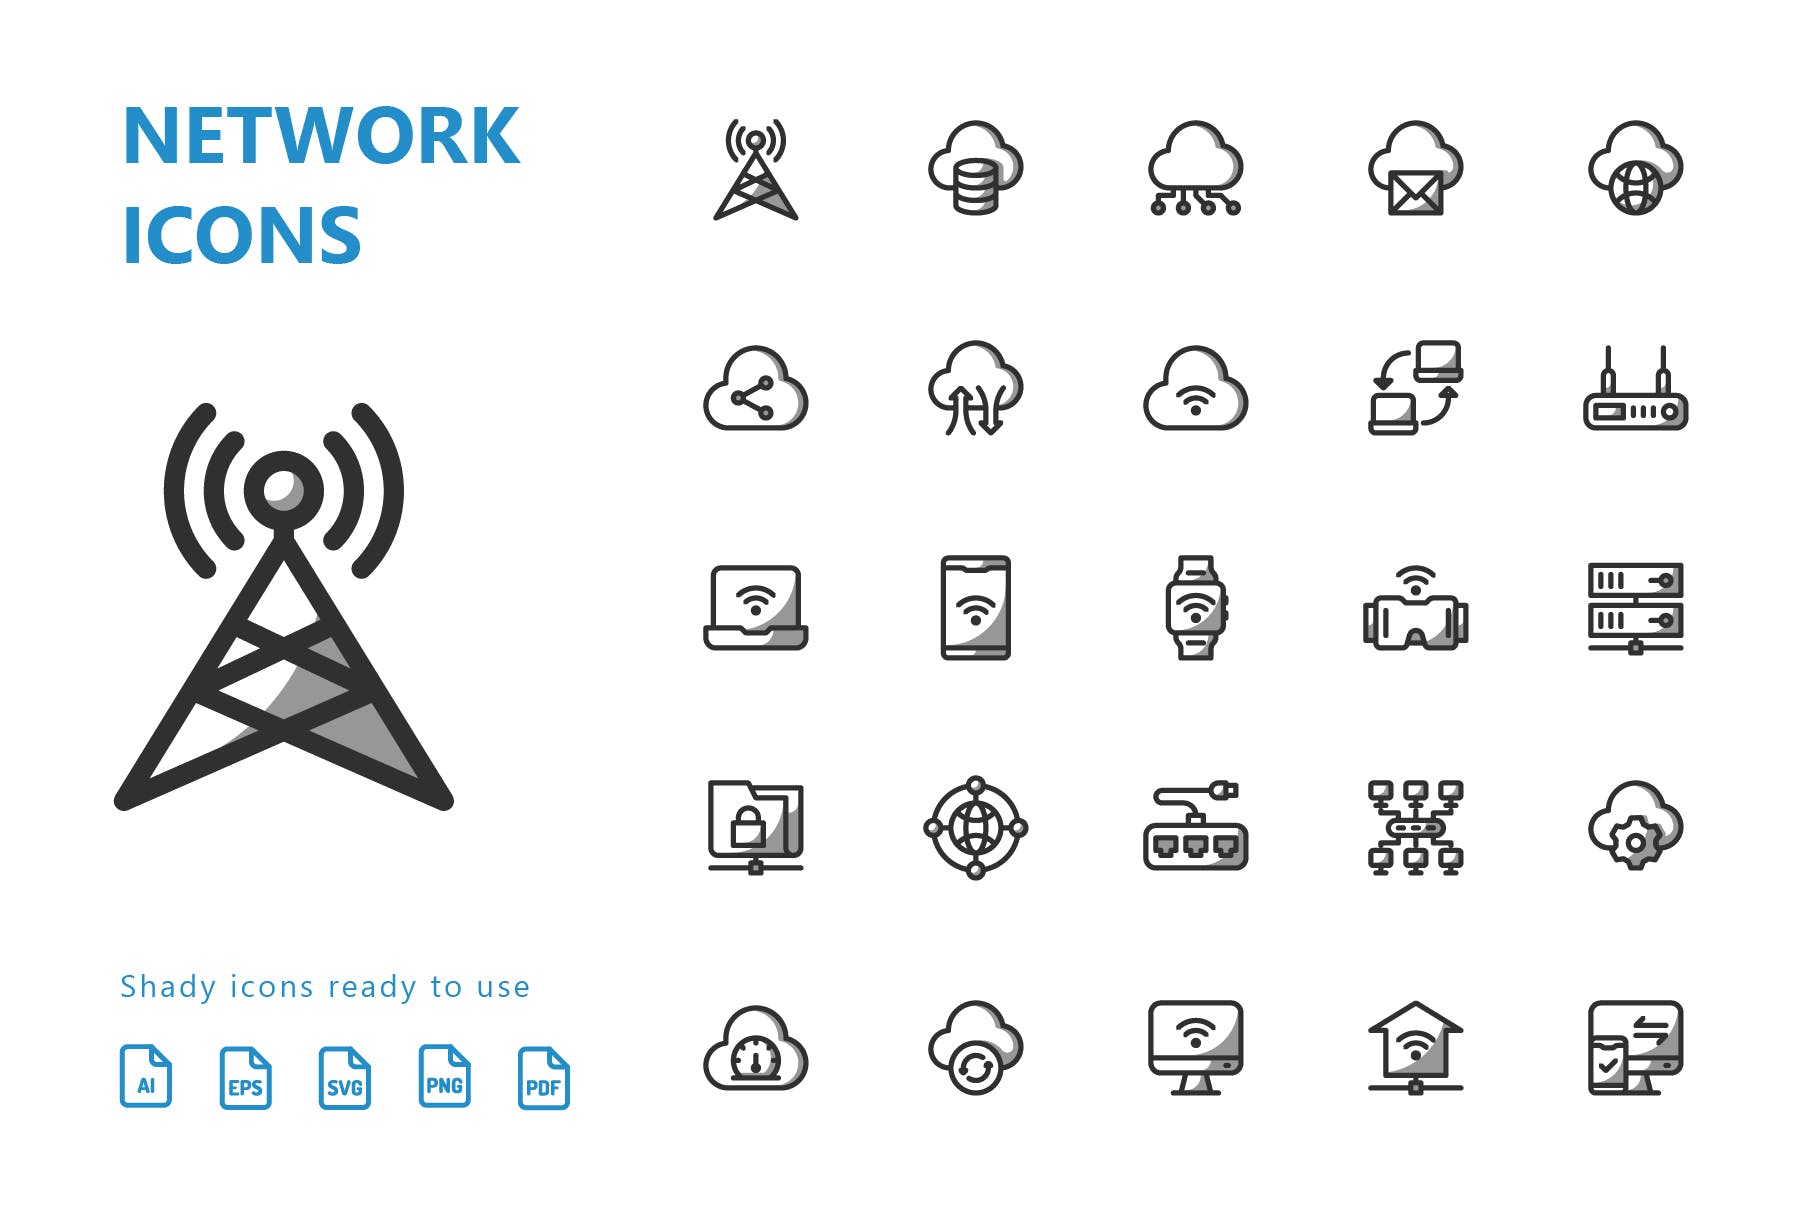 网络科技主题矢量阴影蚂蚁素材精选图标 Network Shady Icons插图(2)